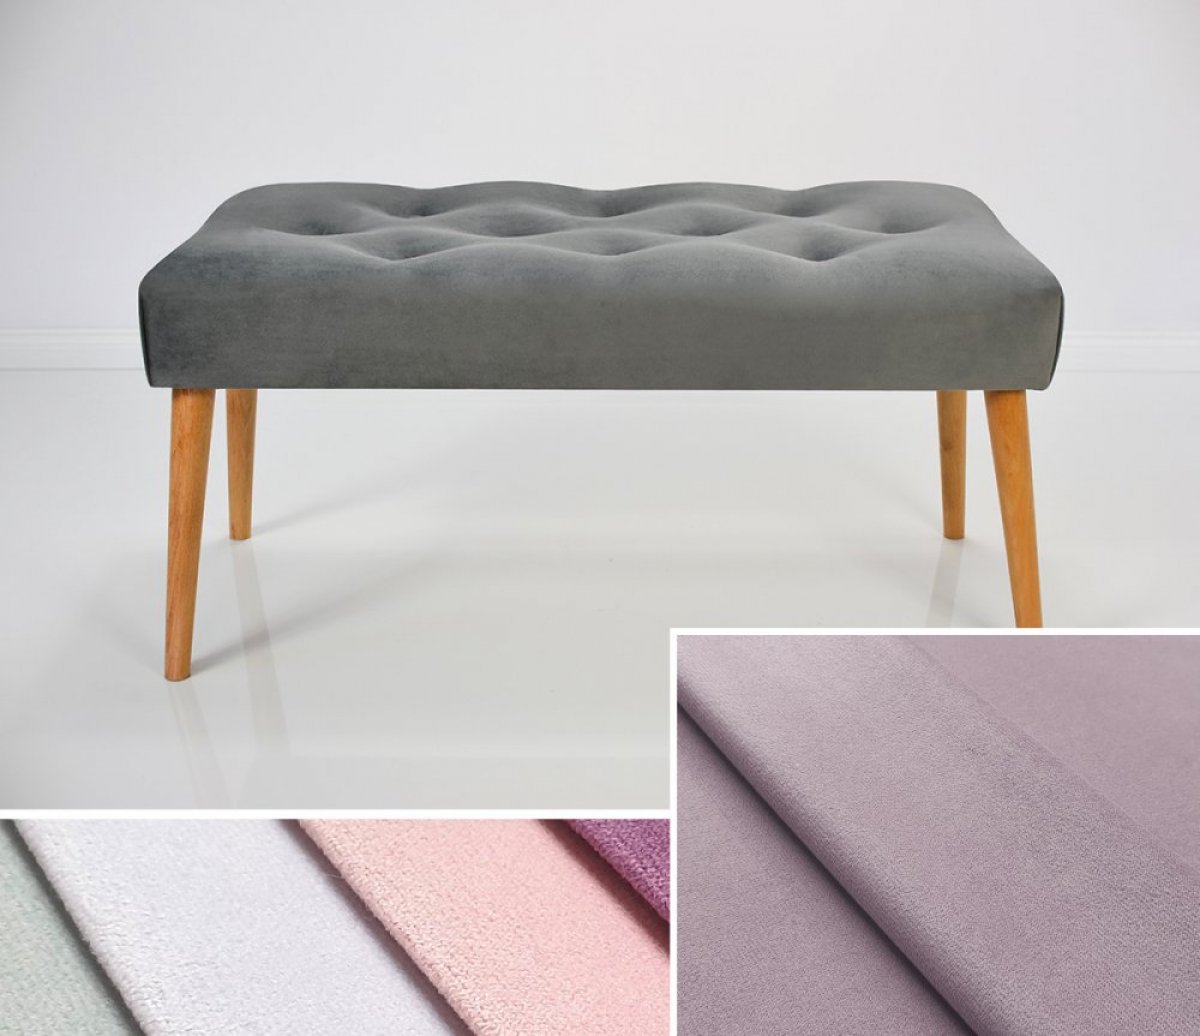 Čalouněná lavice DARINA 100x40x42 cm, barva  levandulová